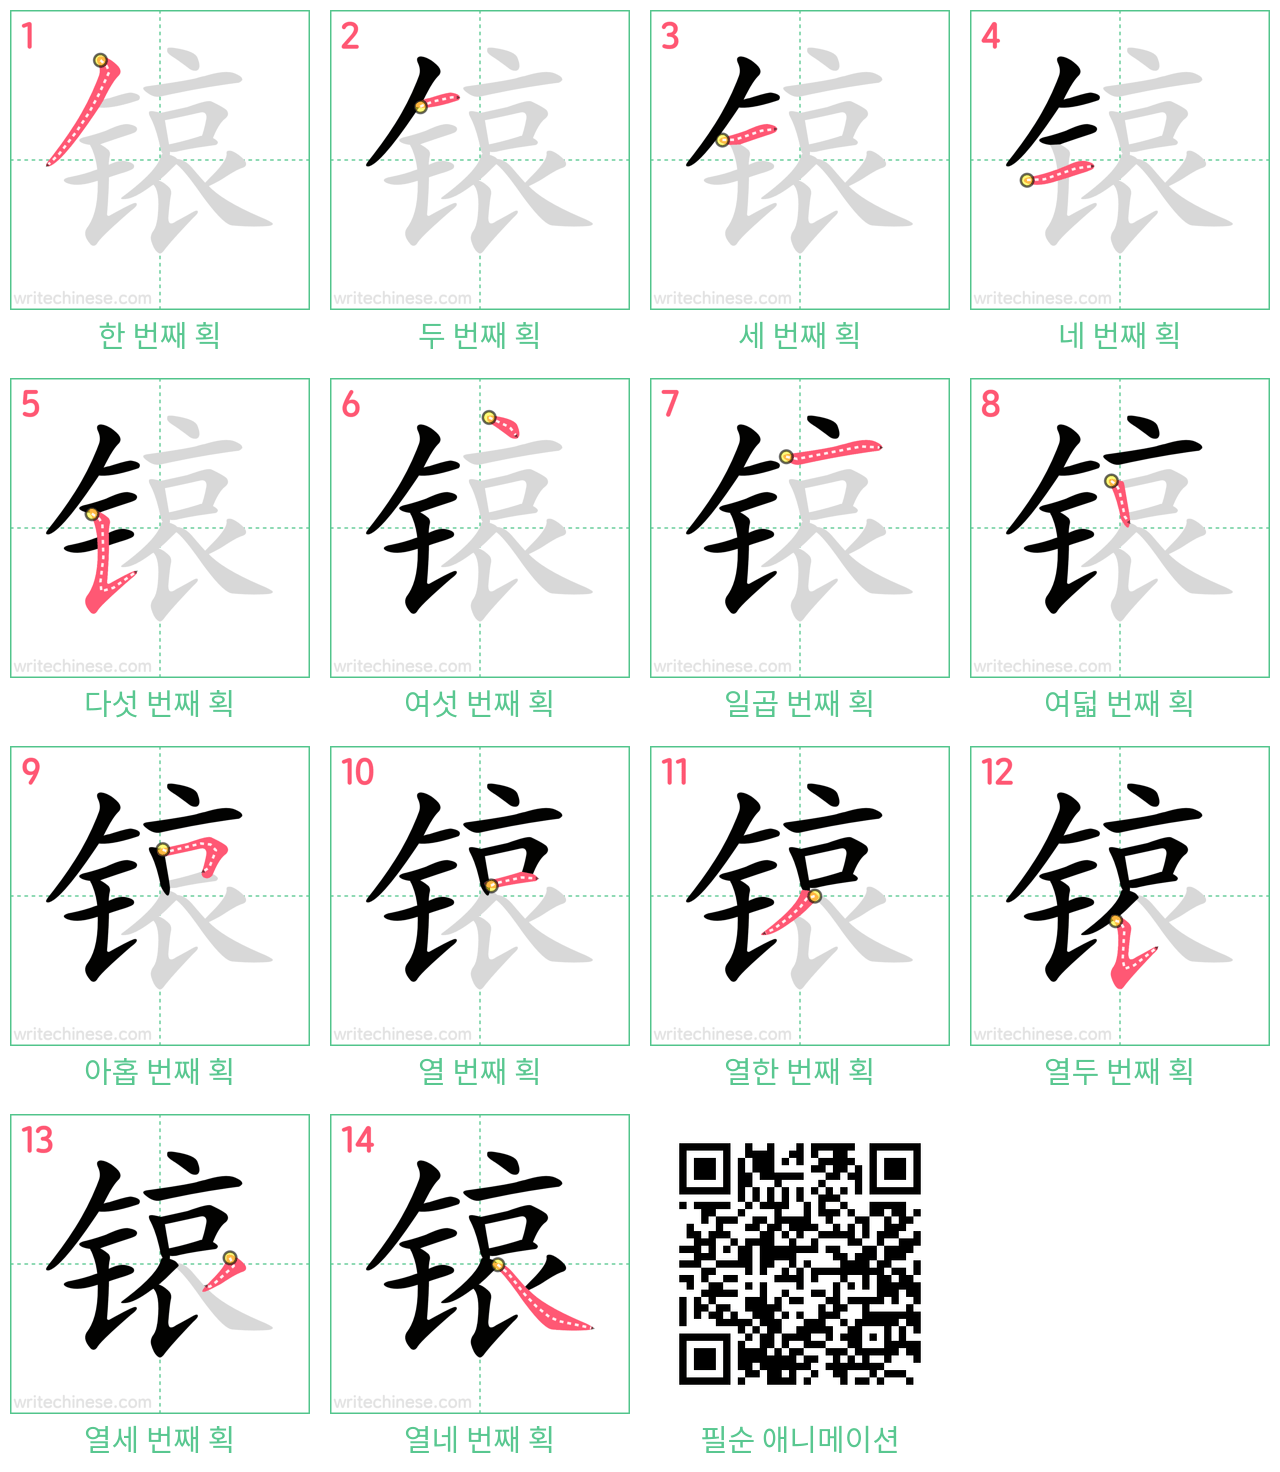 锿 step-by-step stroke order diagrams